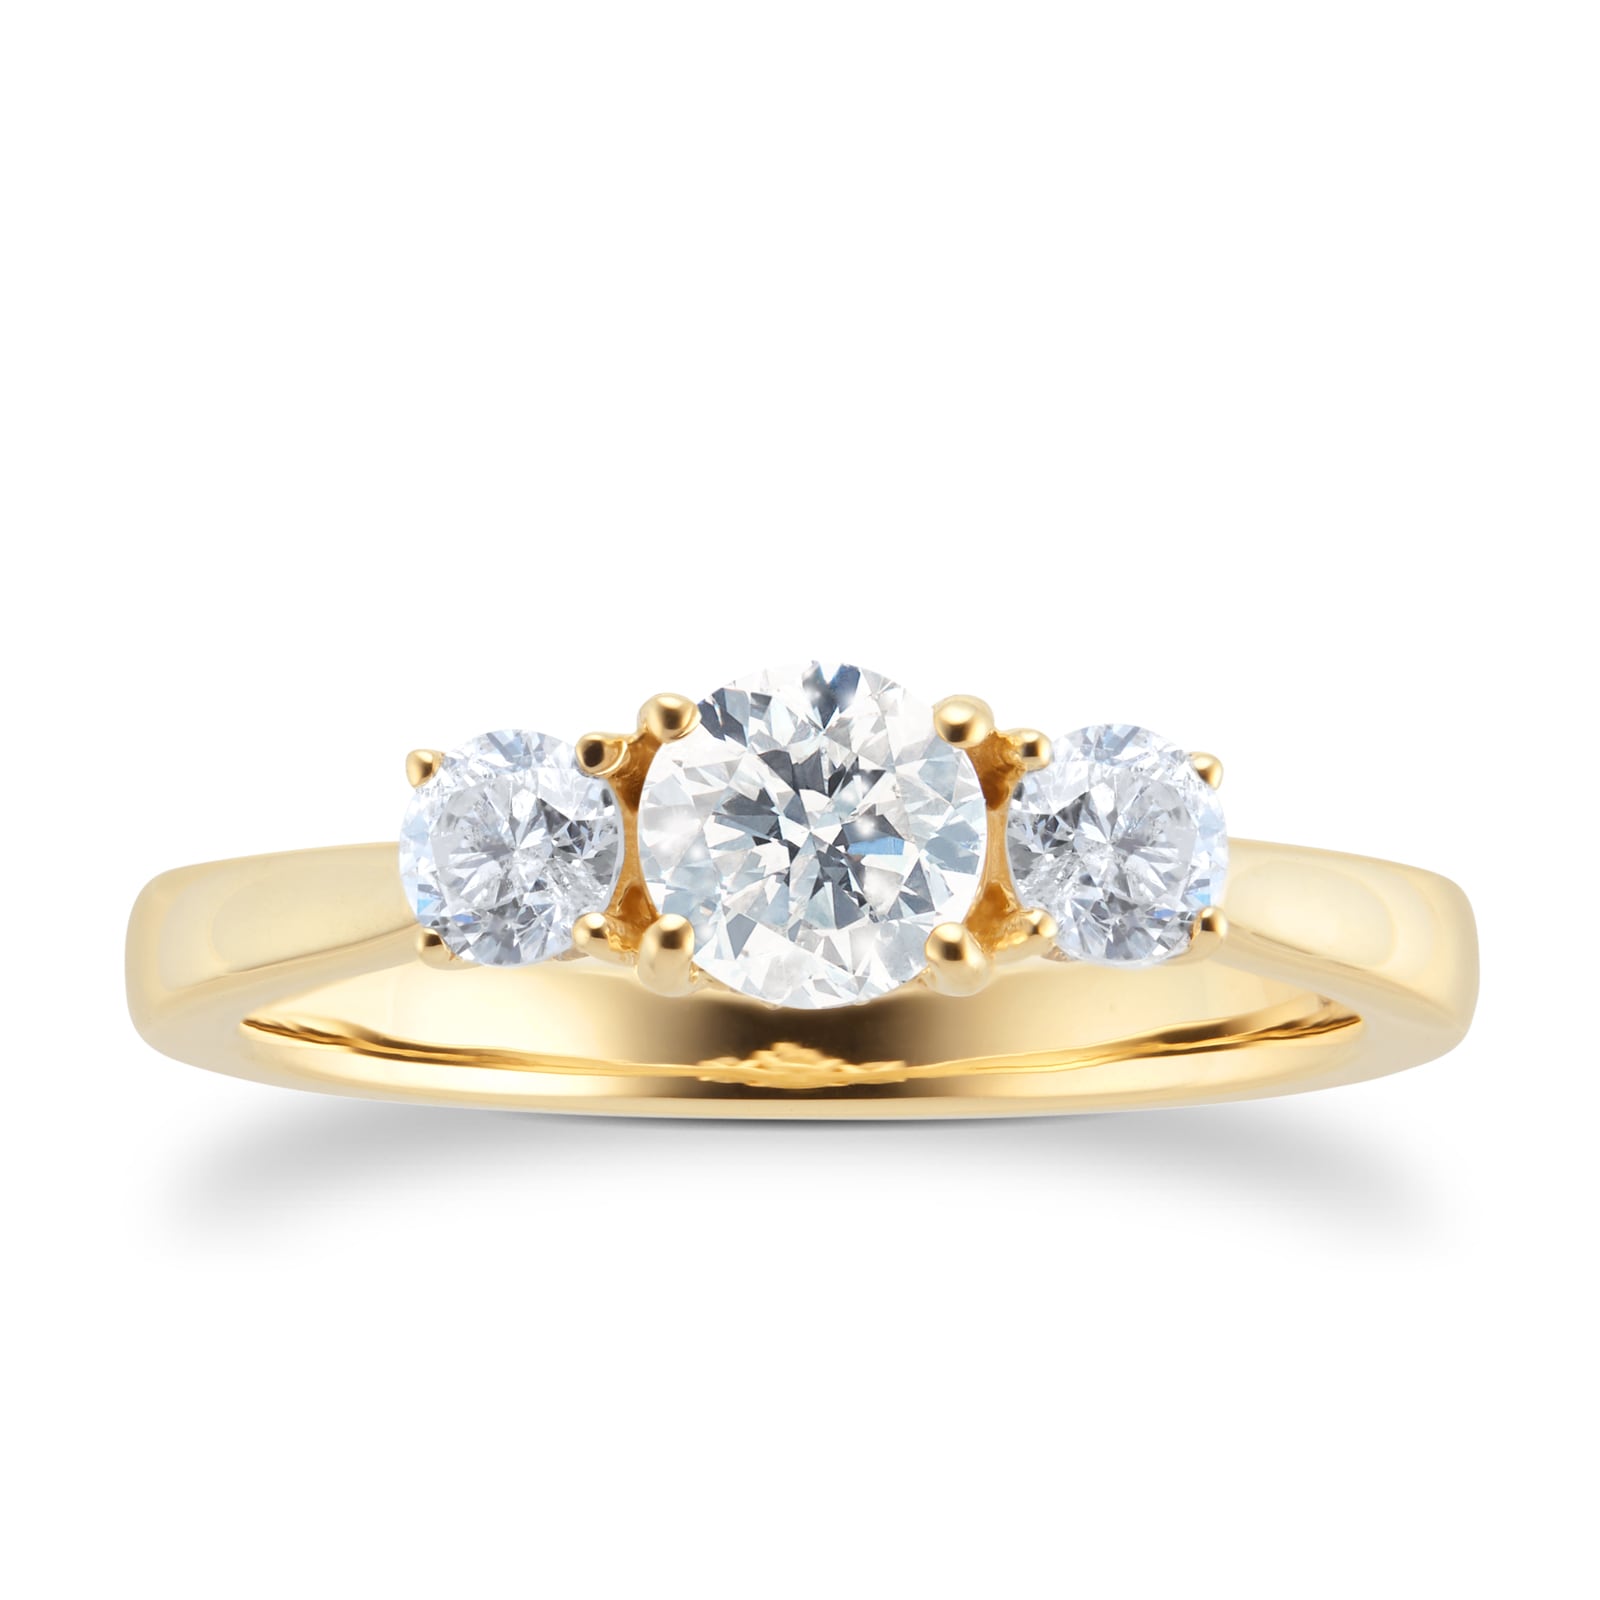 Engagement Rings, Diamond & Multi Stone Engagement Rings For Women & Men UK  | Goldsmiths